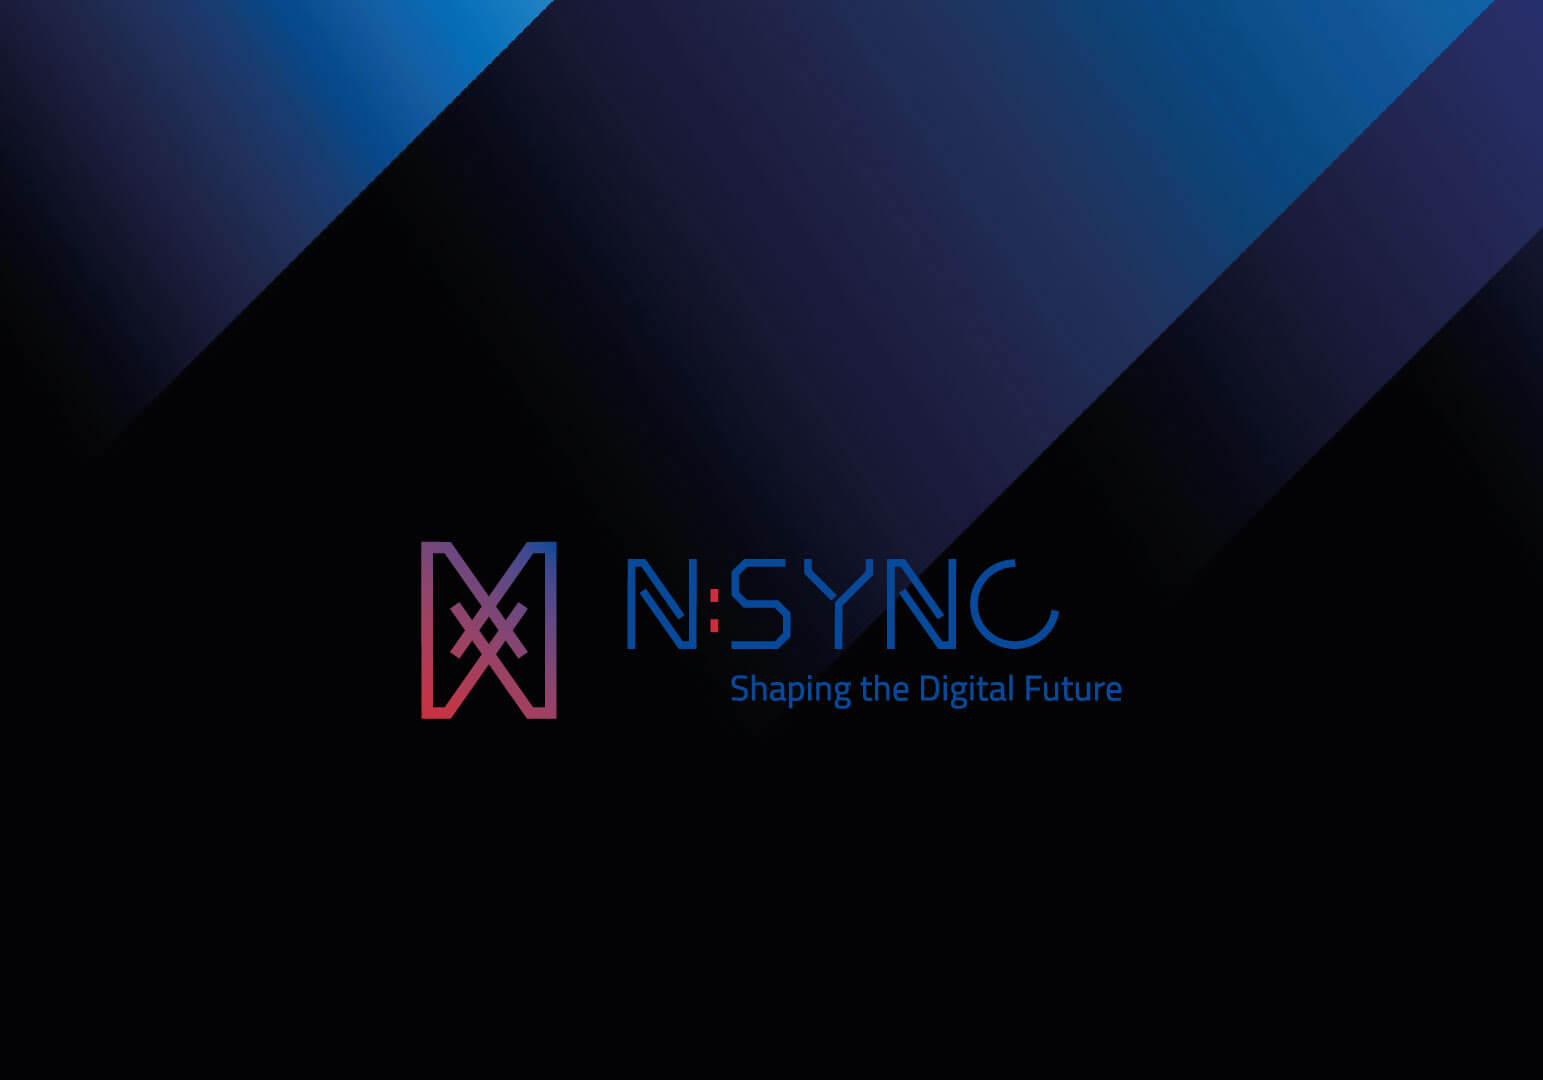 Das Logo der Marke N:SYNC auf einem schwarzen Hintergrund mit blauem Licht das von Oben einfällt.